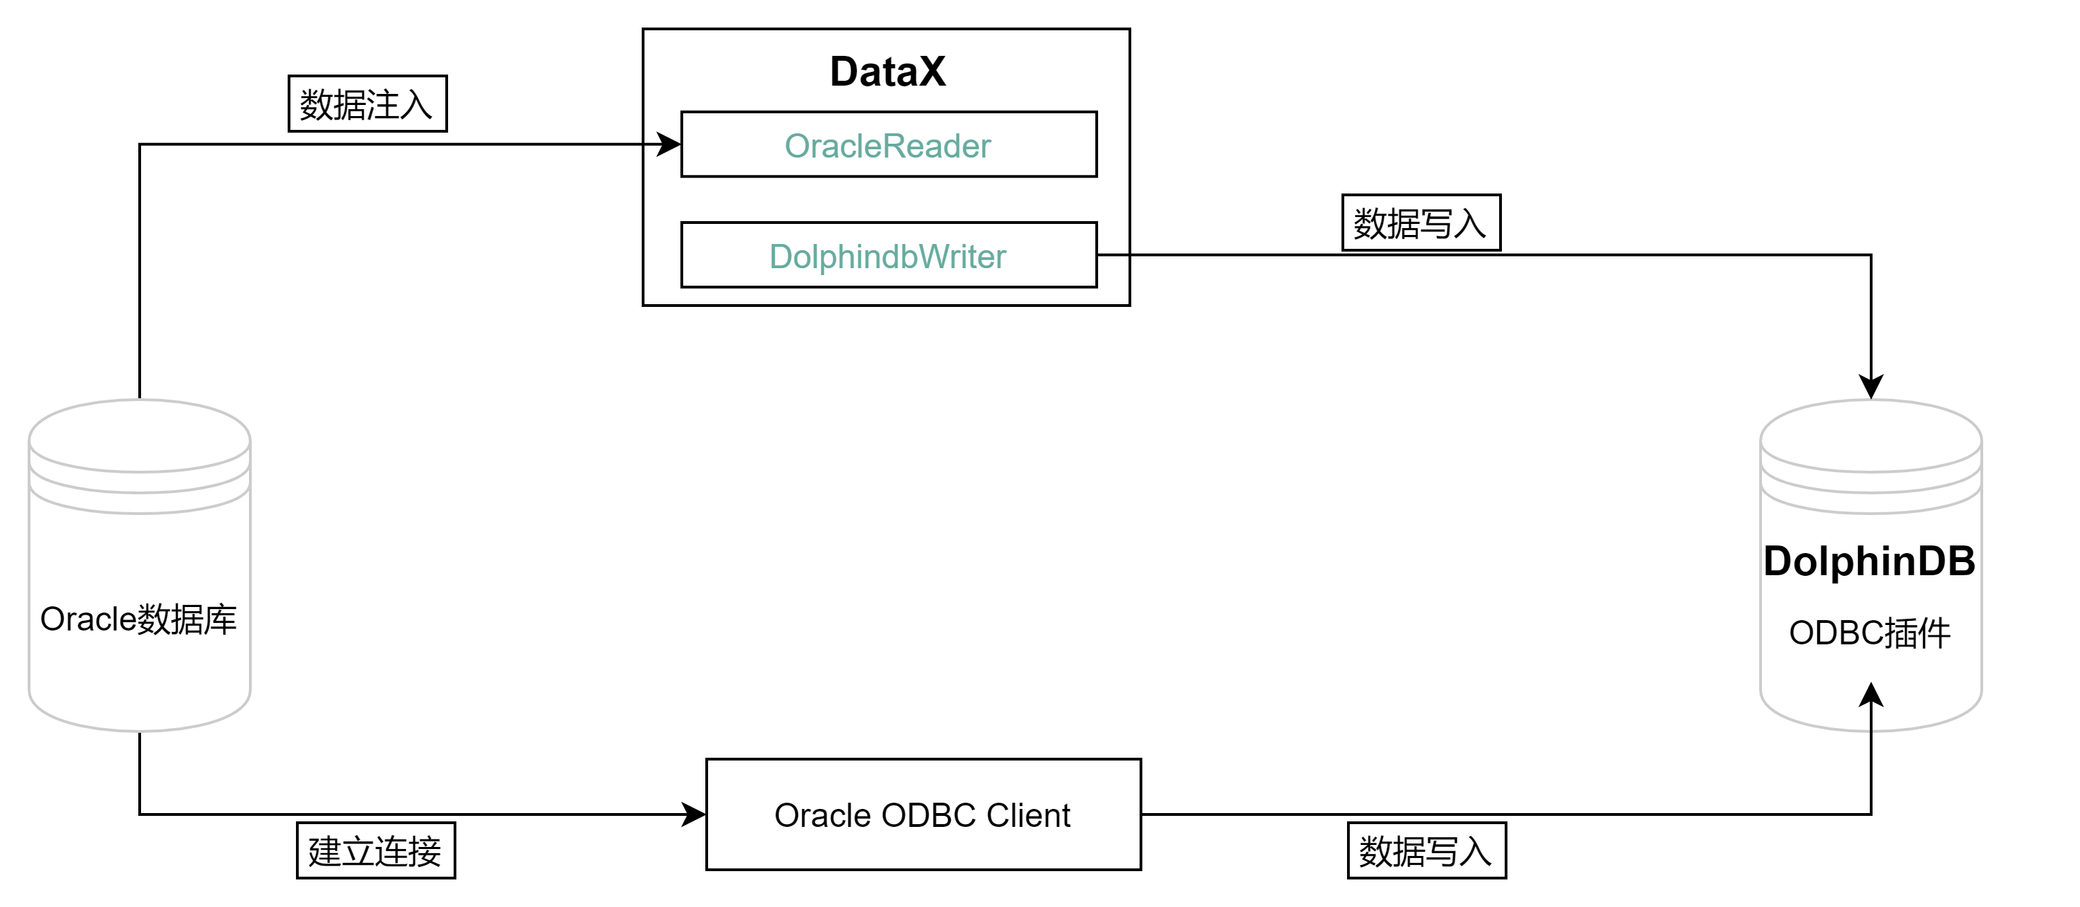 一文详解如何从 Oracle 迁移数据到 DolphinDB_oracle